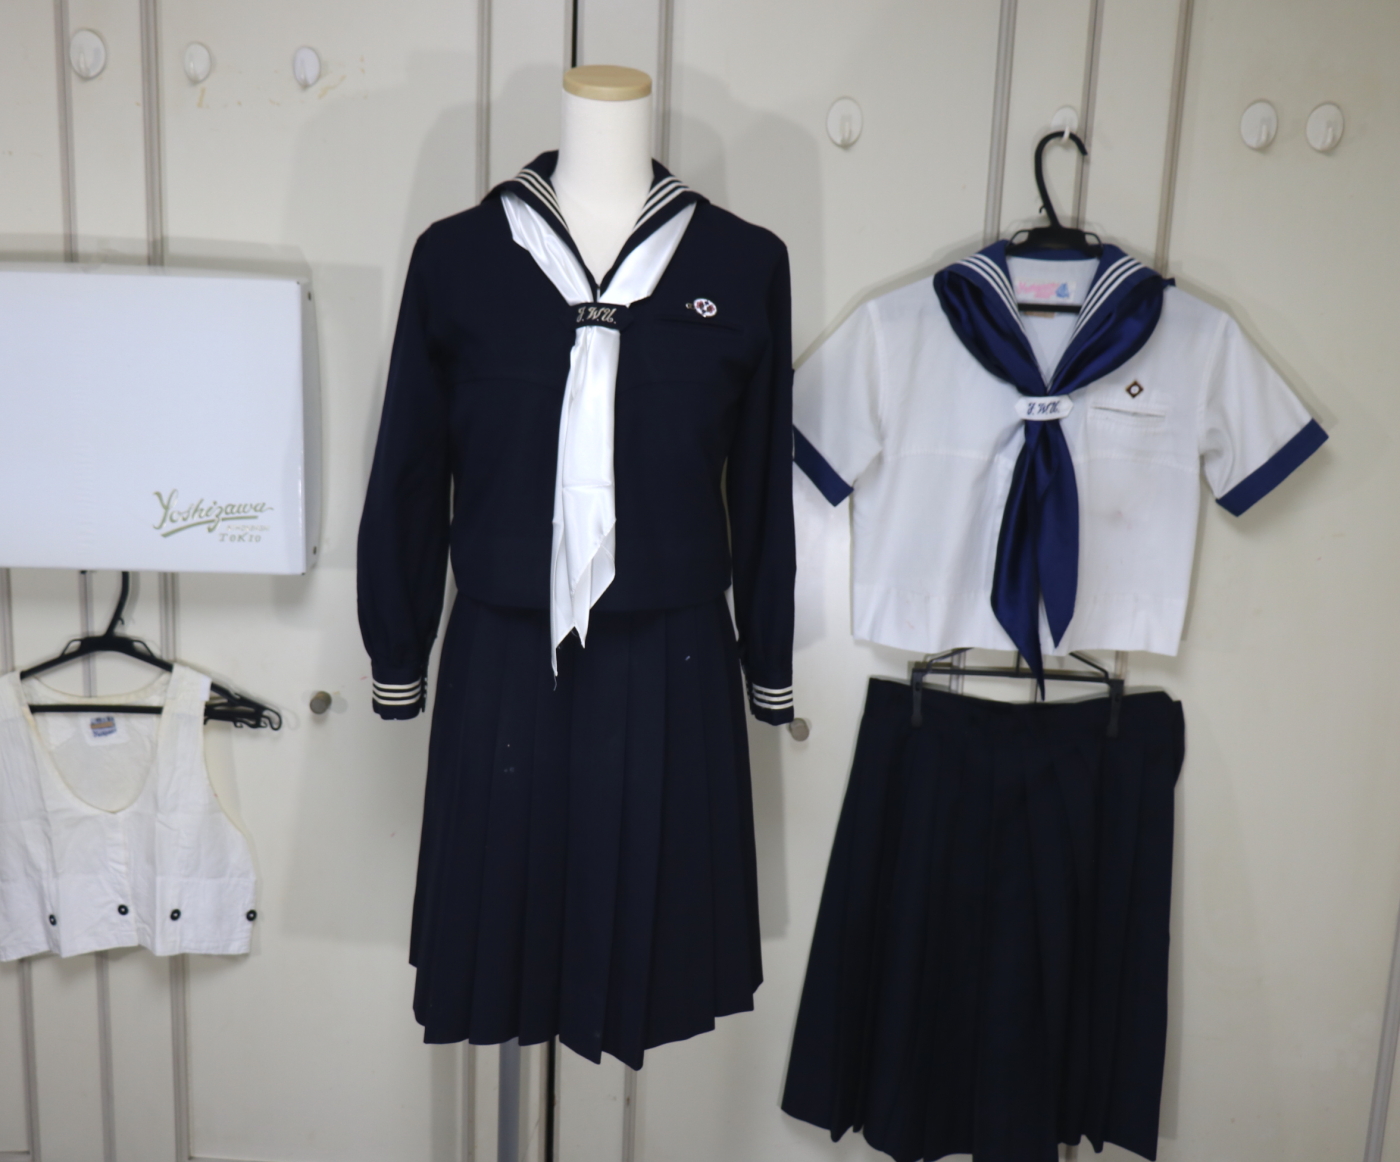 日本女子大学附属中学校のセーラー服を買取しました | 制服買取東京2020